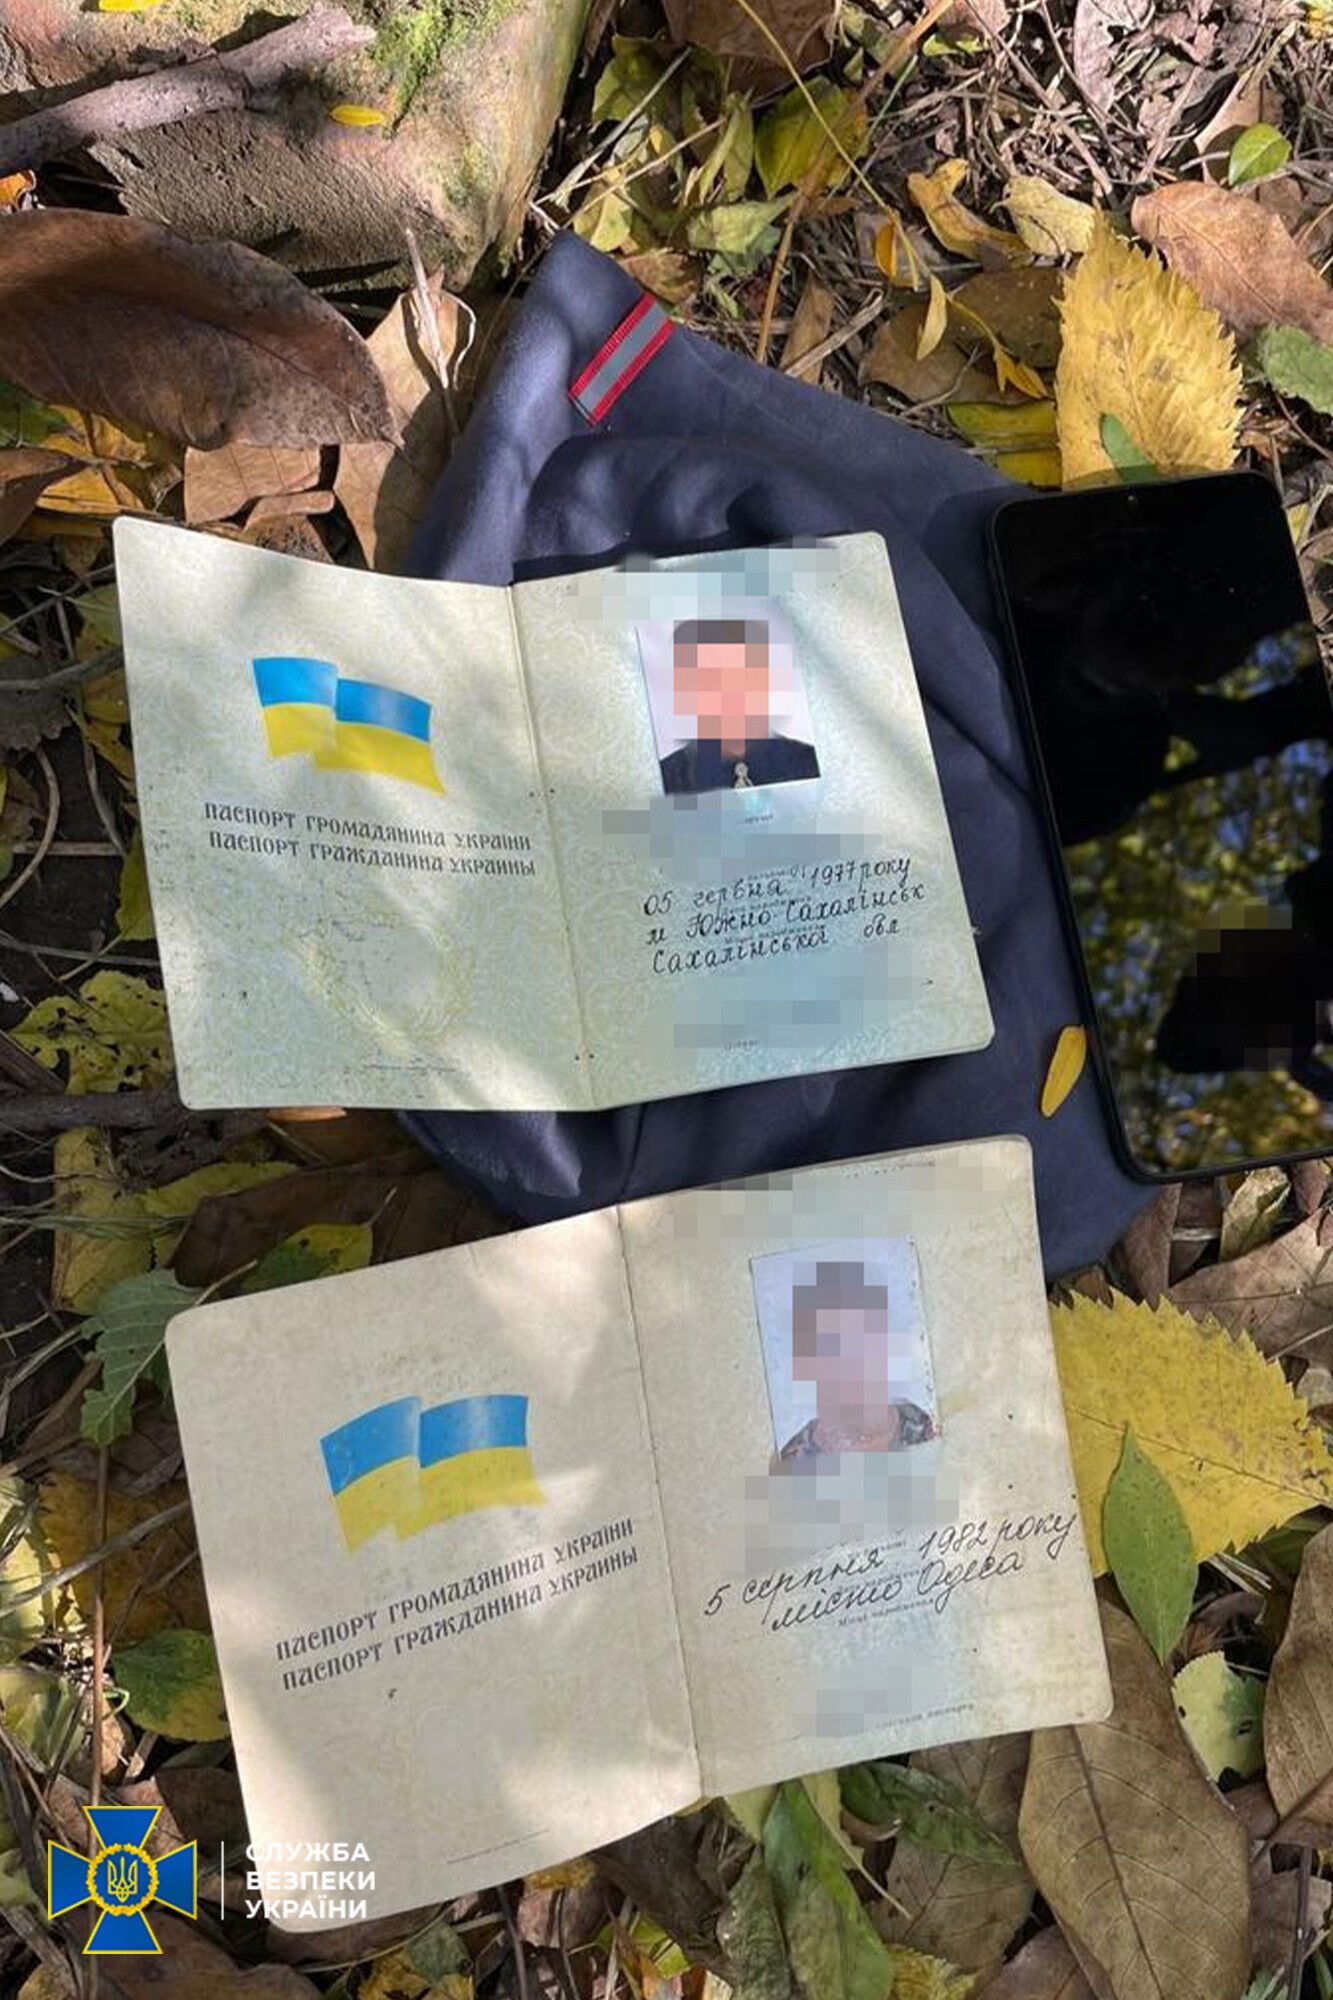 СБУ задержала агента ГРУ РФ, готовившего взрывы на Одесской железной дороге: для конспирации менял внешность. Фото